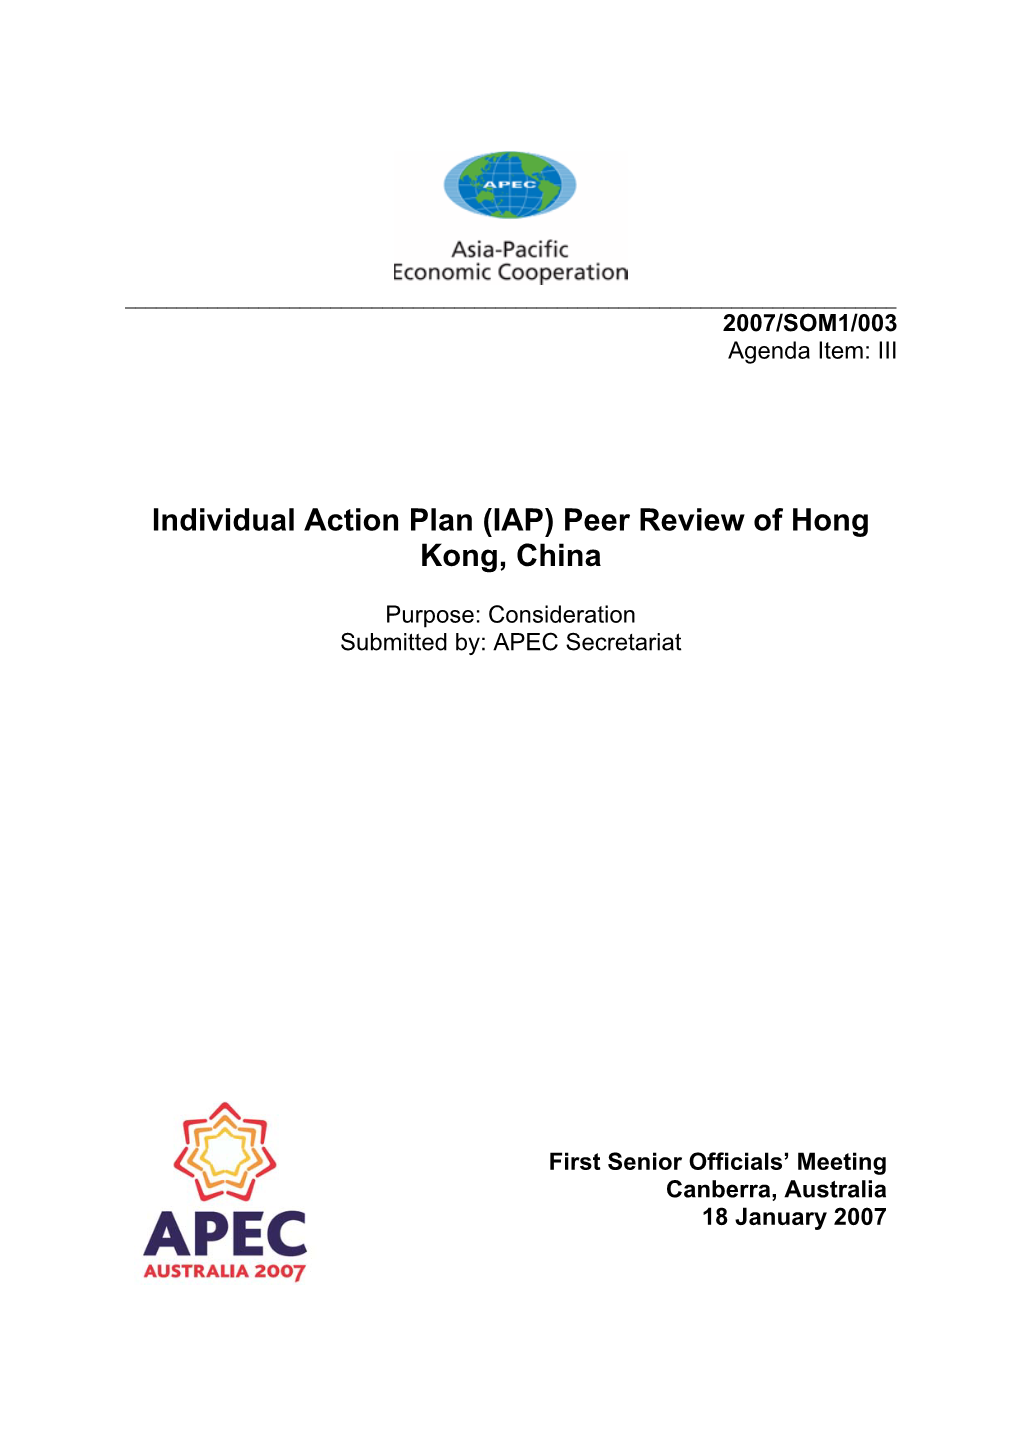 Peer Review of Hong Kong, China